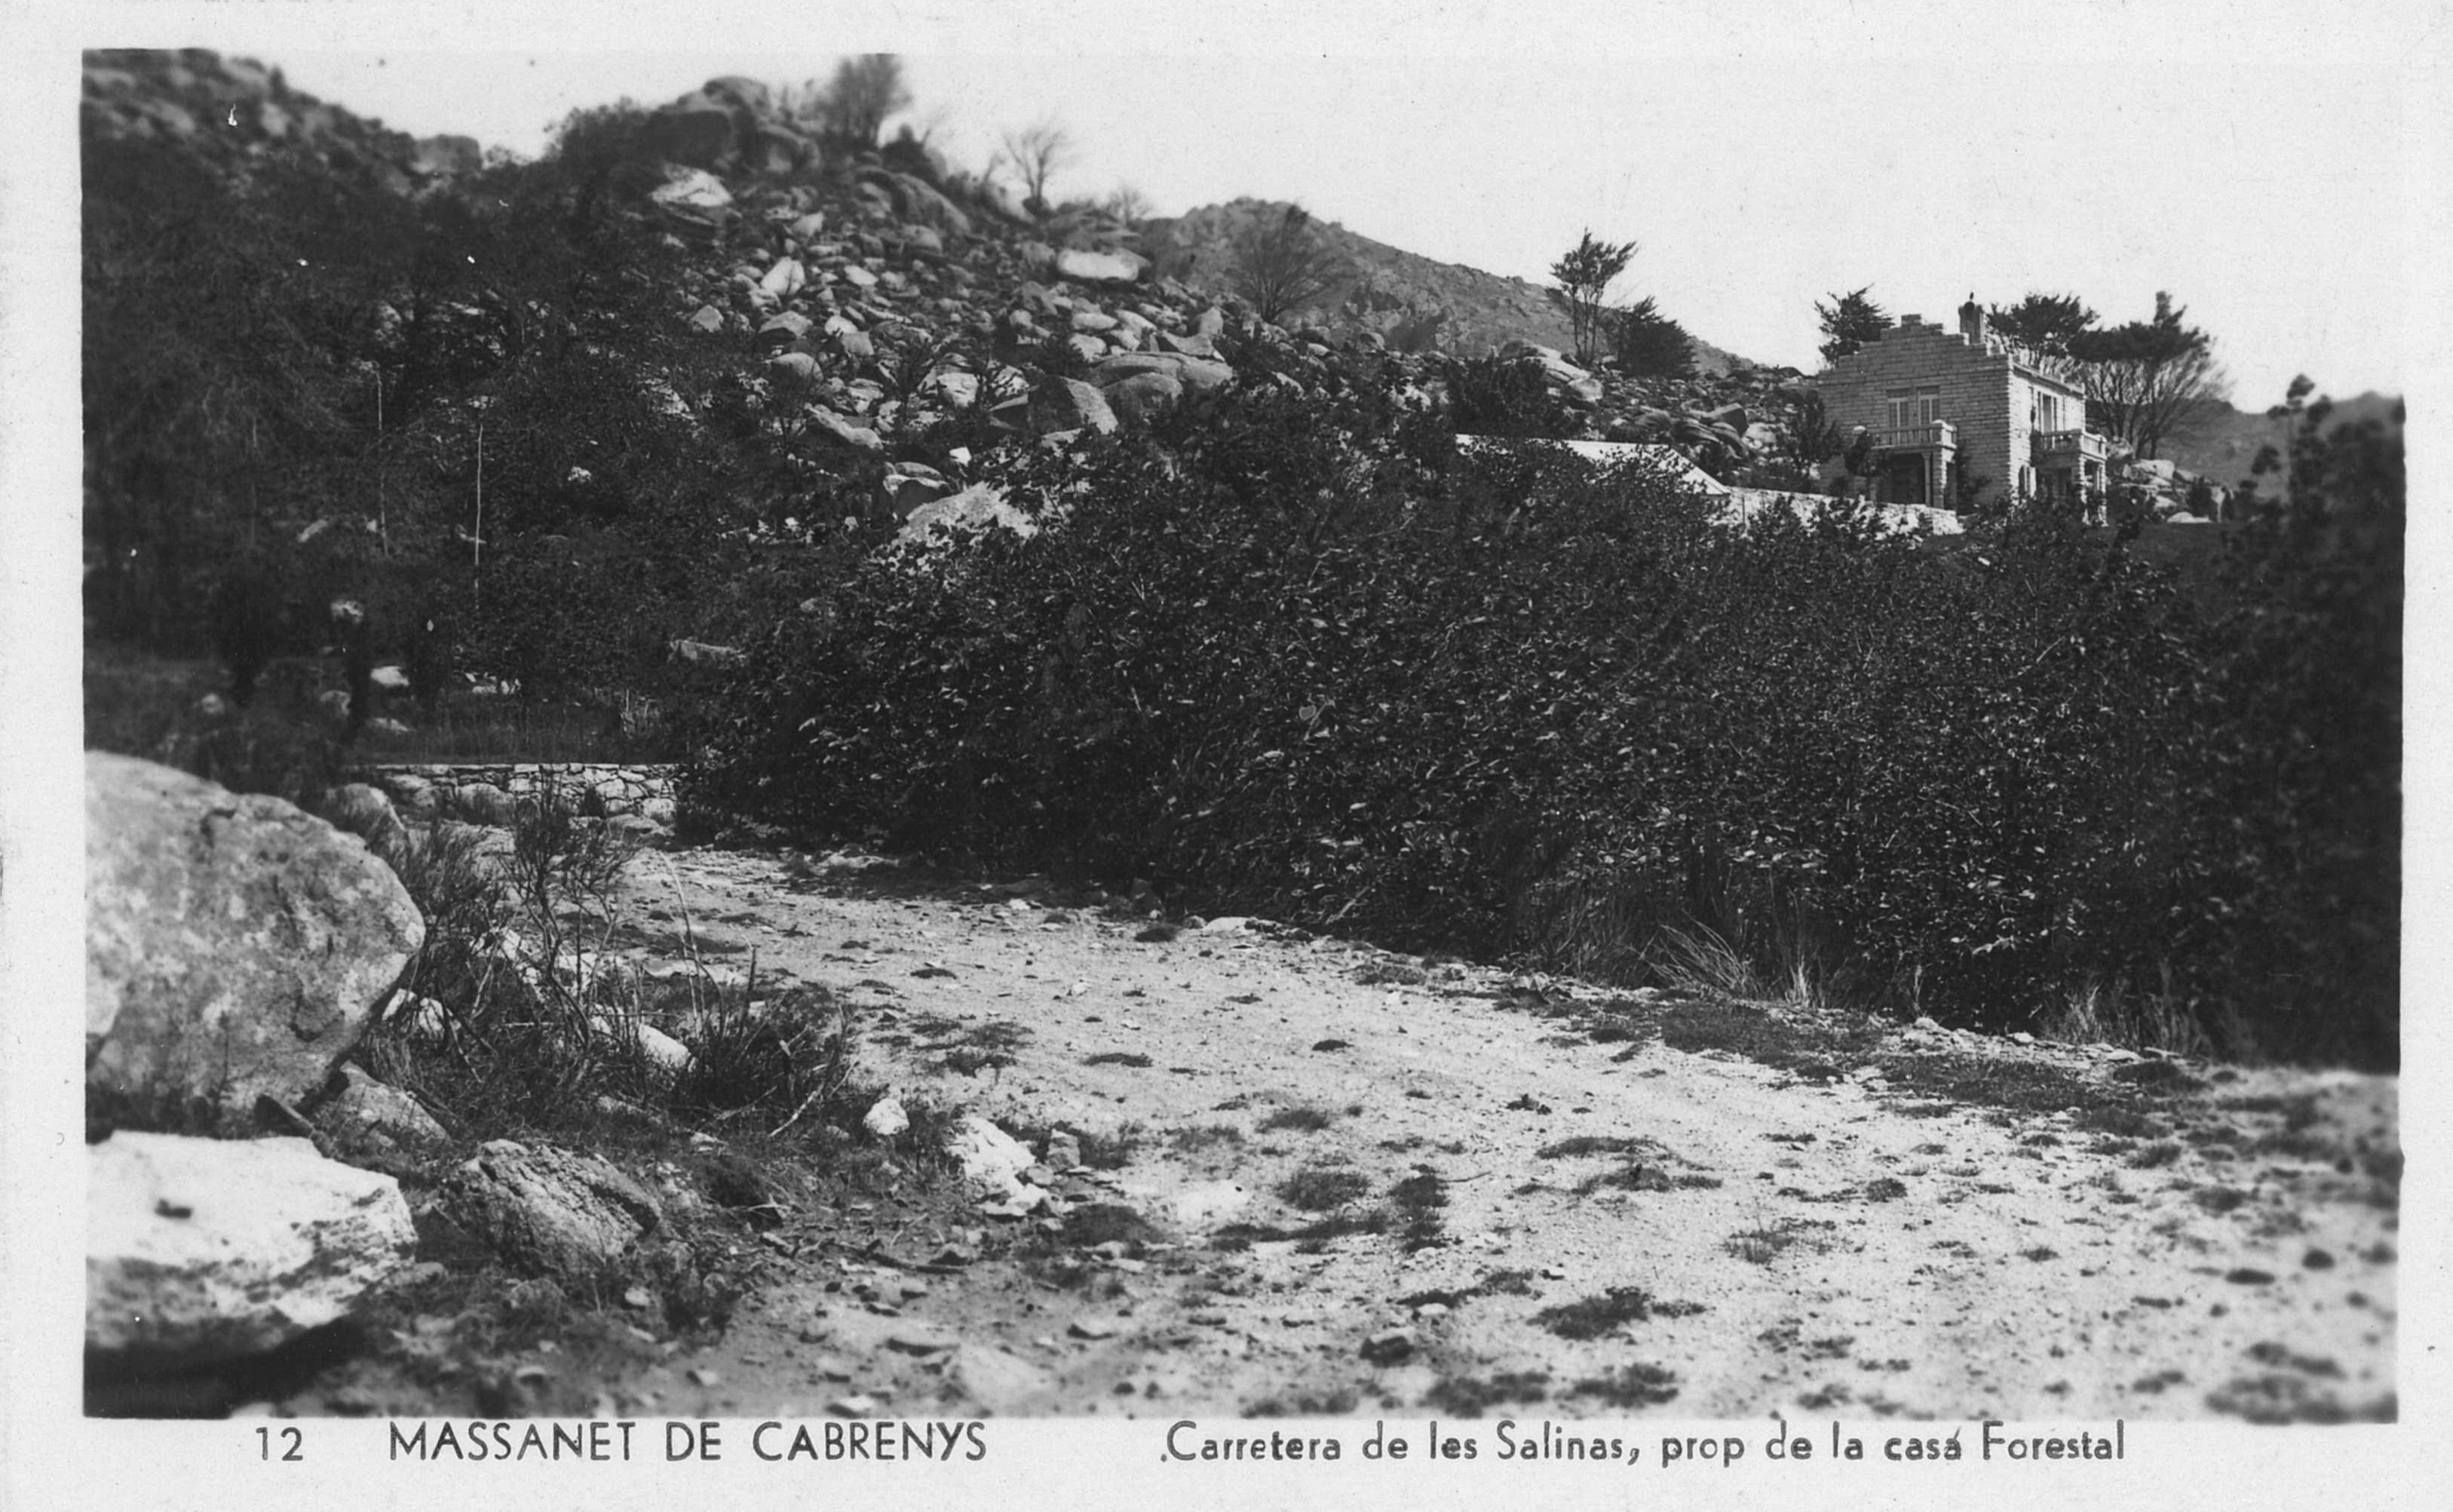 La carretera de les Salines de Maçanet de Cabrenys, la pista més transitada durant l'exili